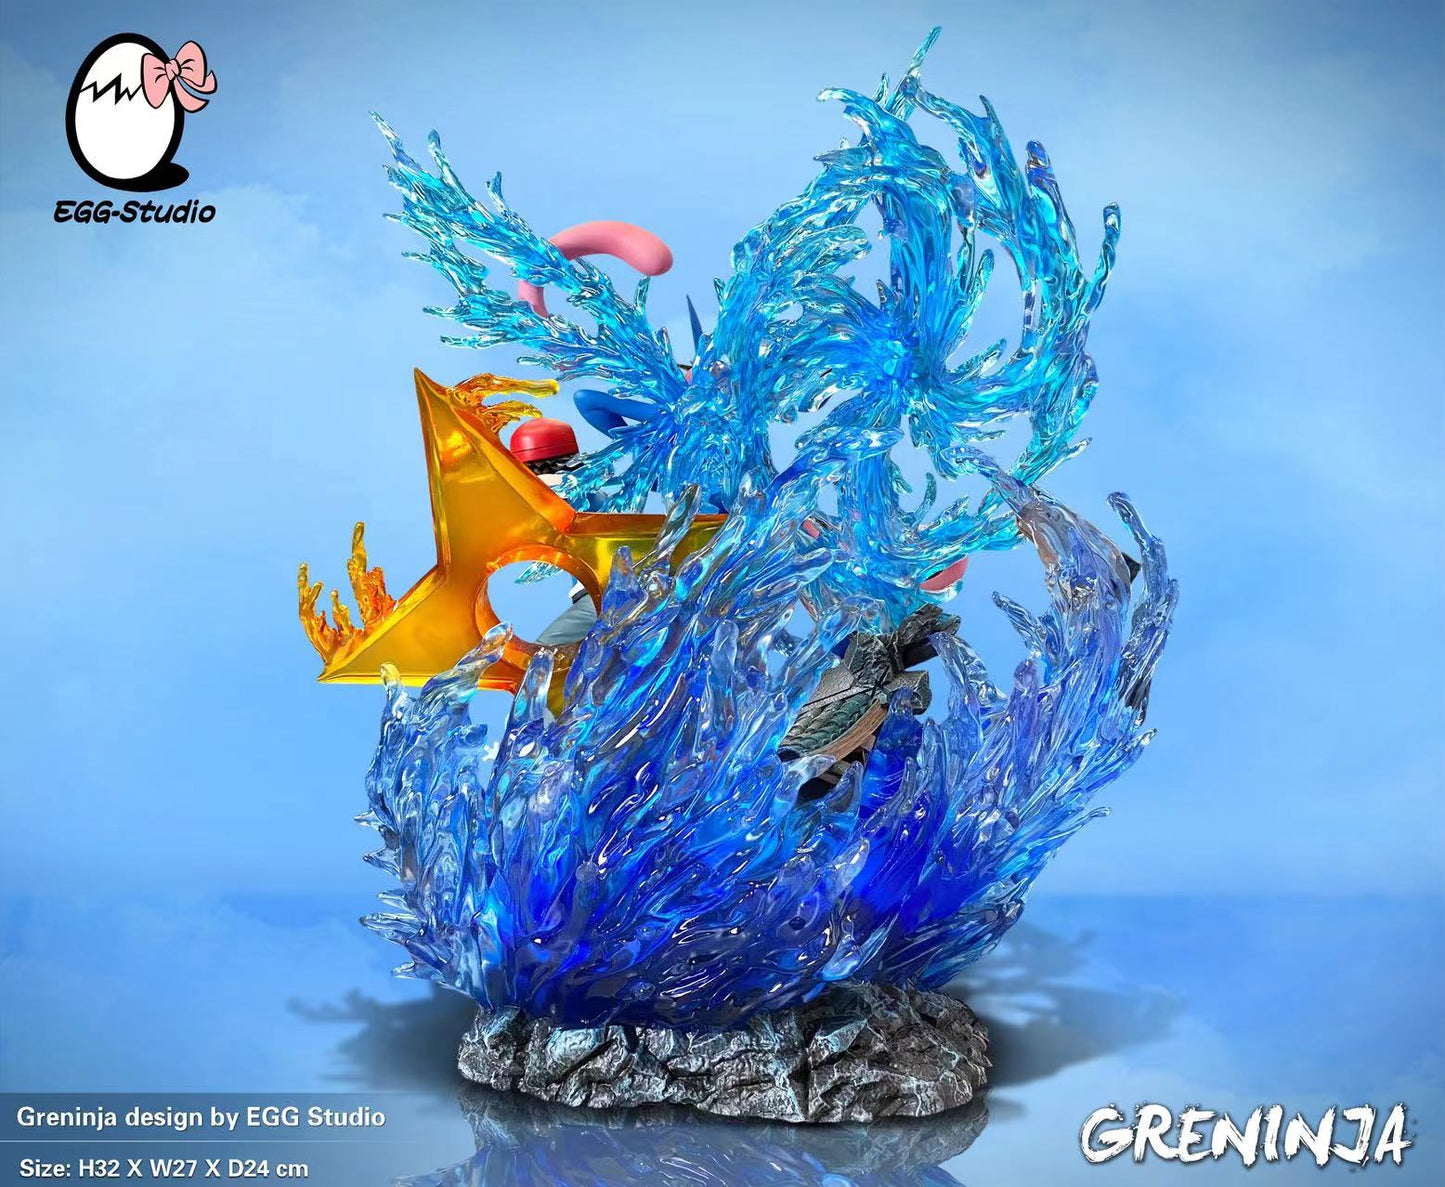 〖Sold Out〗Pokemon ASH & Greninja Family Model Statue Resin - EGG Studio